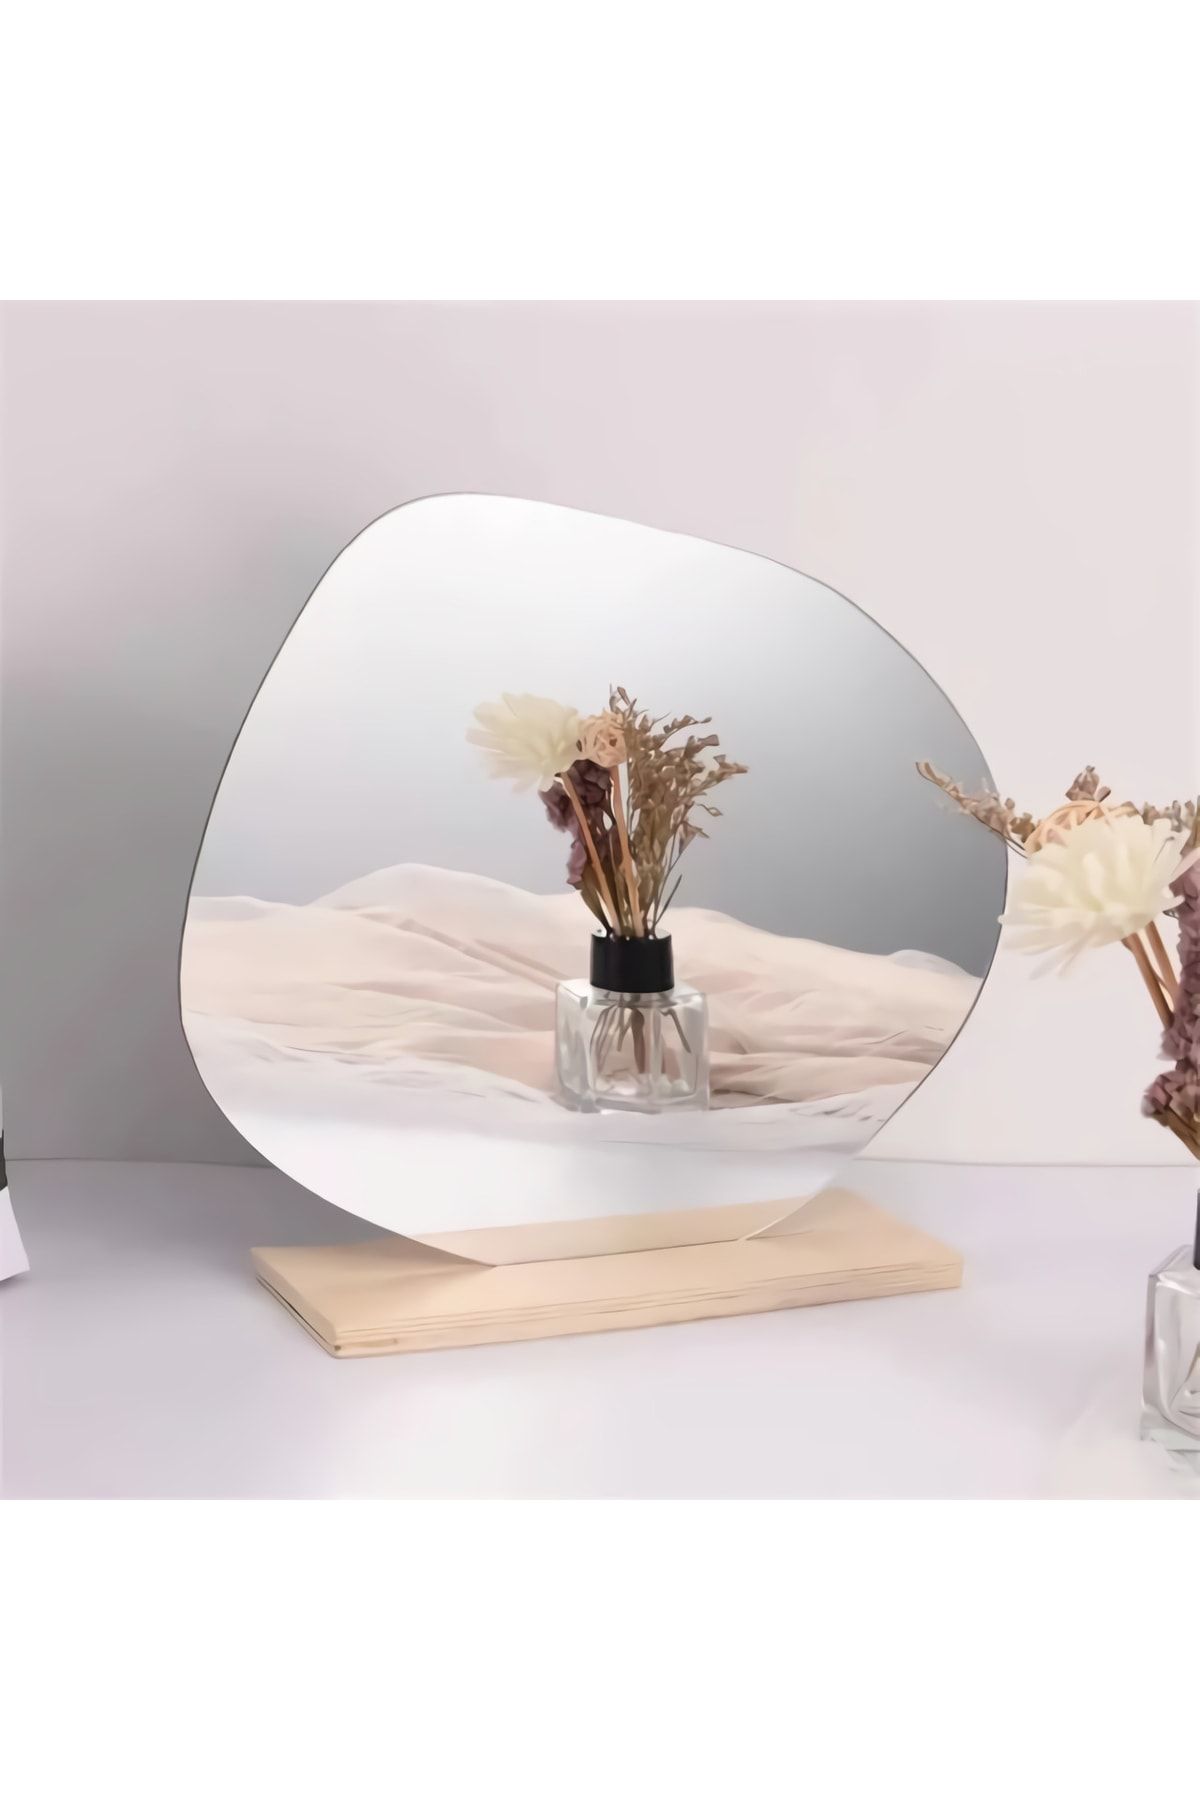 FNC CONCEPT Makyaj Aynası Ahşap Asimetrik Bulut Ayna Dekoratif Selfie Aynası Ev Dekorasyon 30x22 Cm